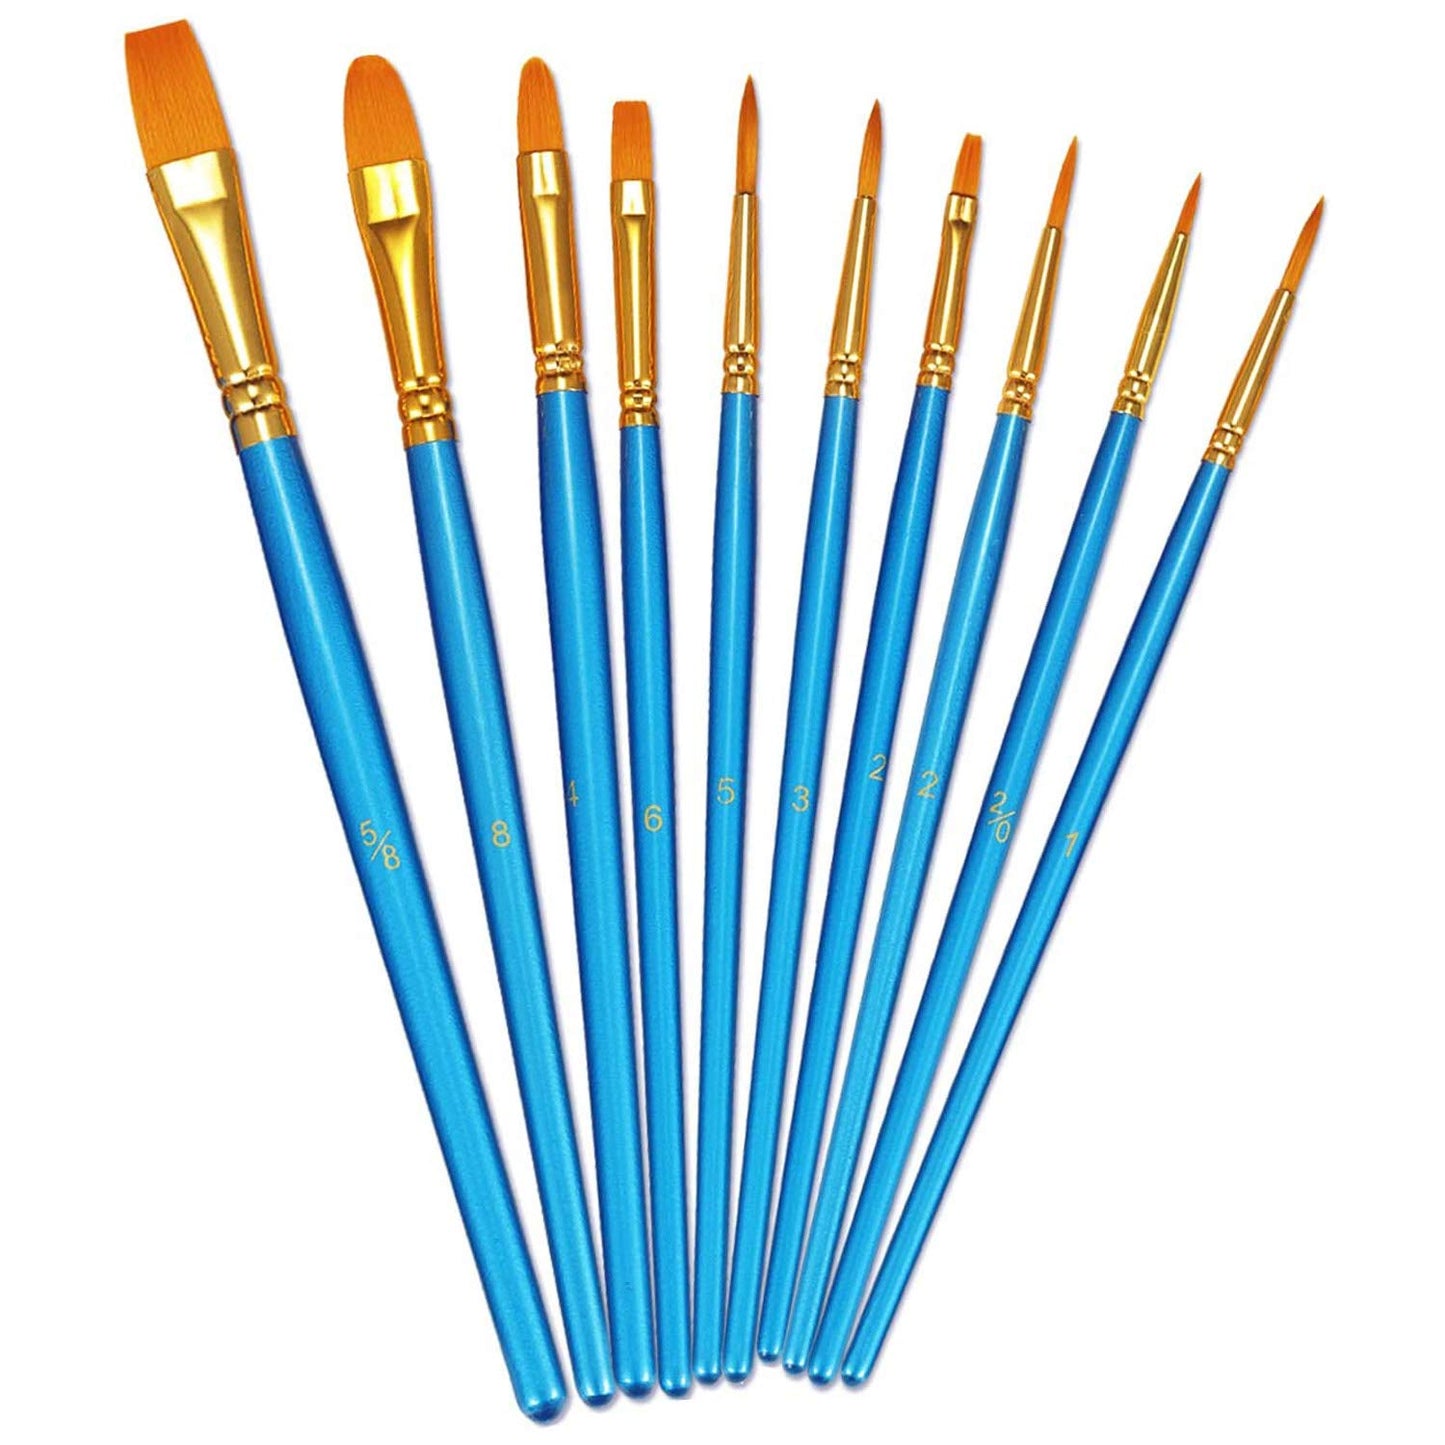 FT0056 - Paint Brush Set of 10pcs